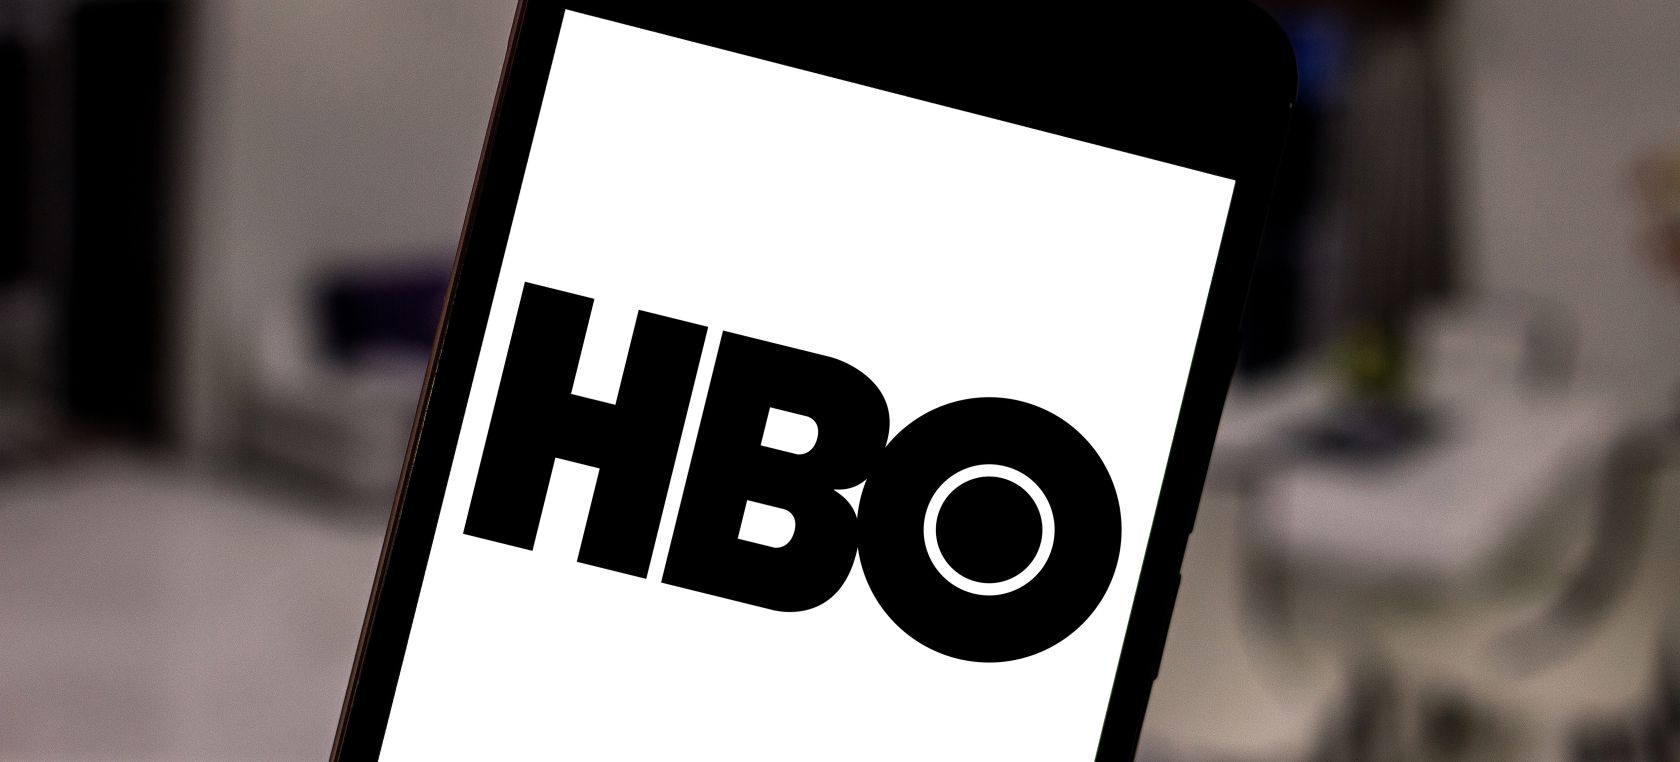 HBO Max no morirá: se fusionará con Discovery+ en una sola plataforma en 2023